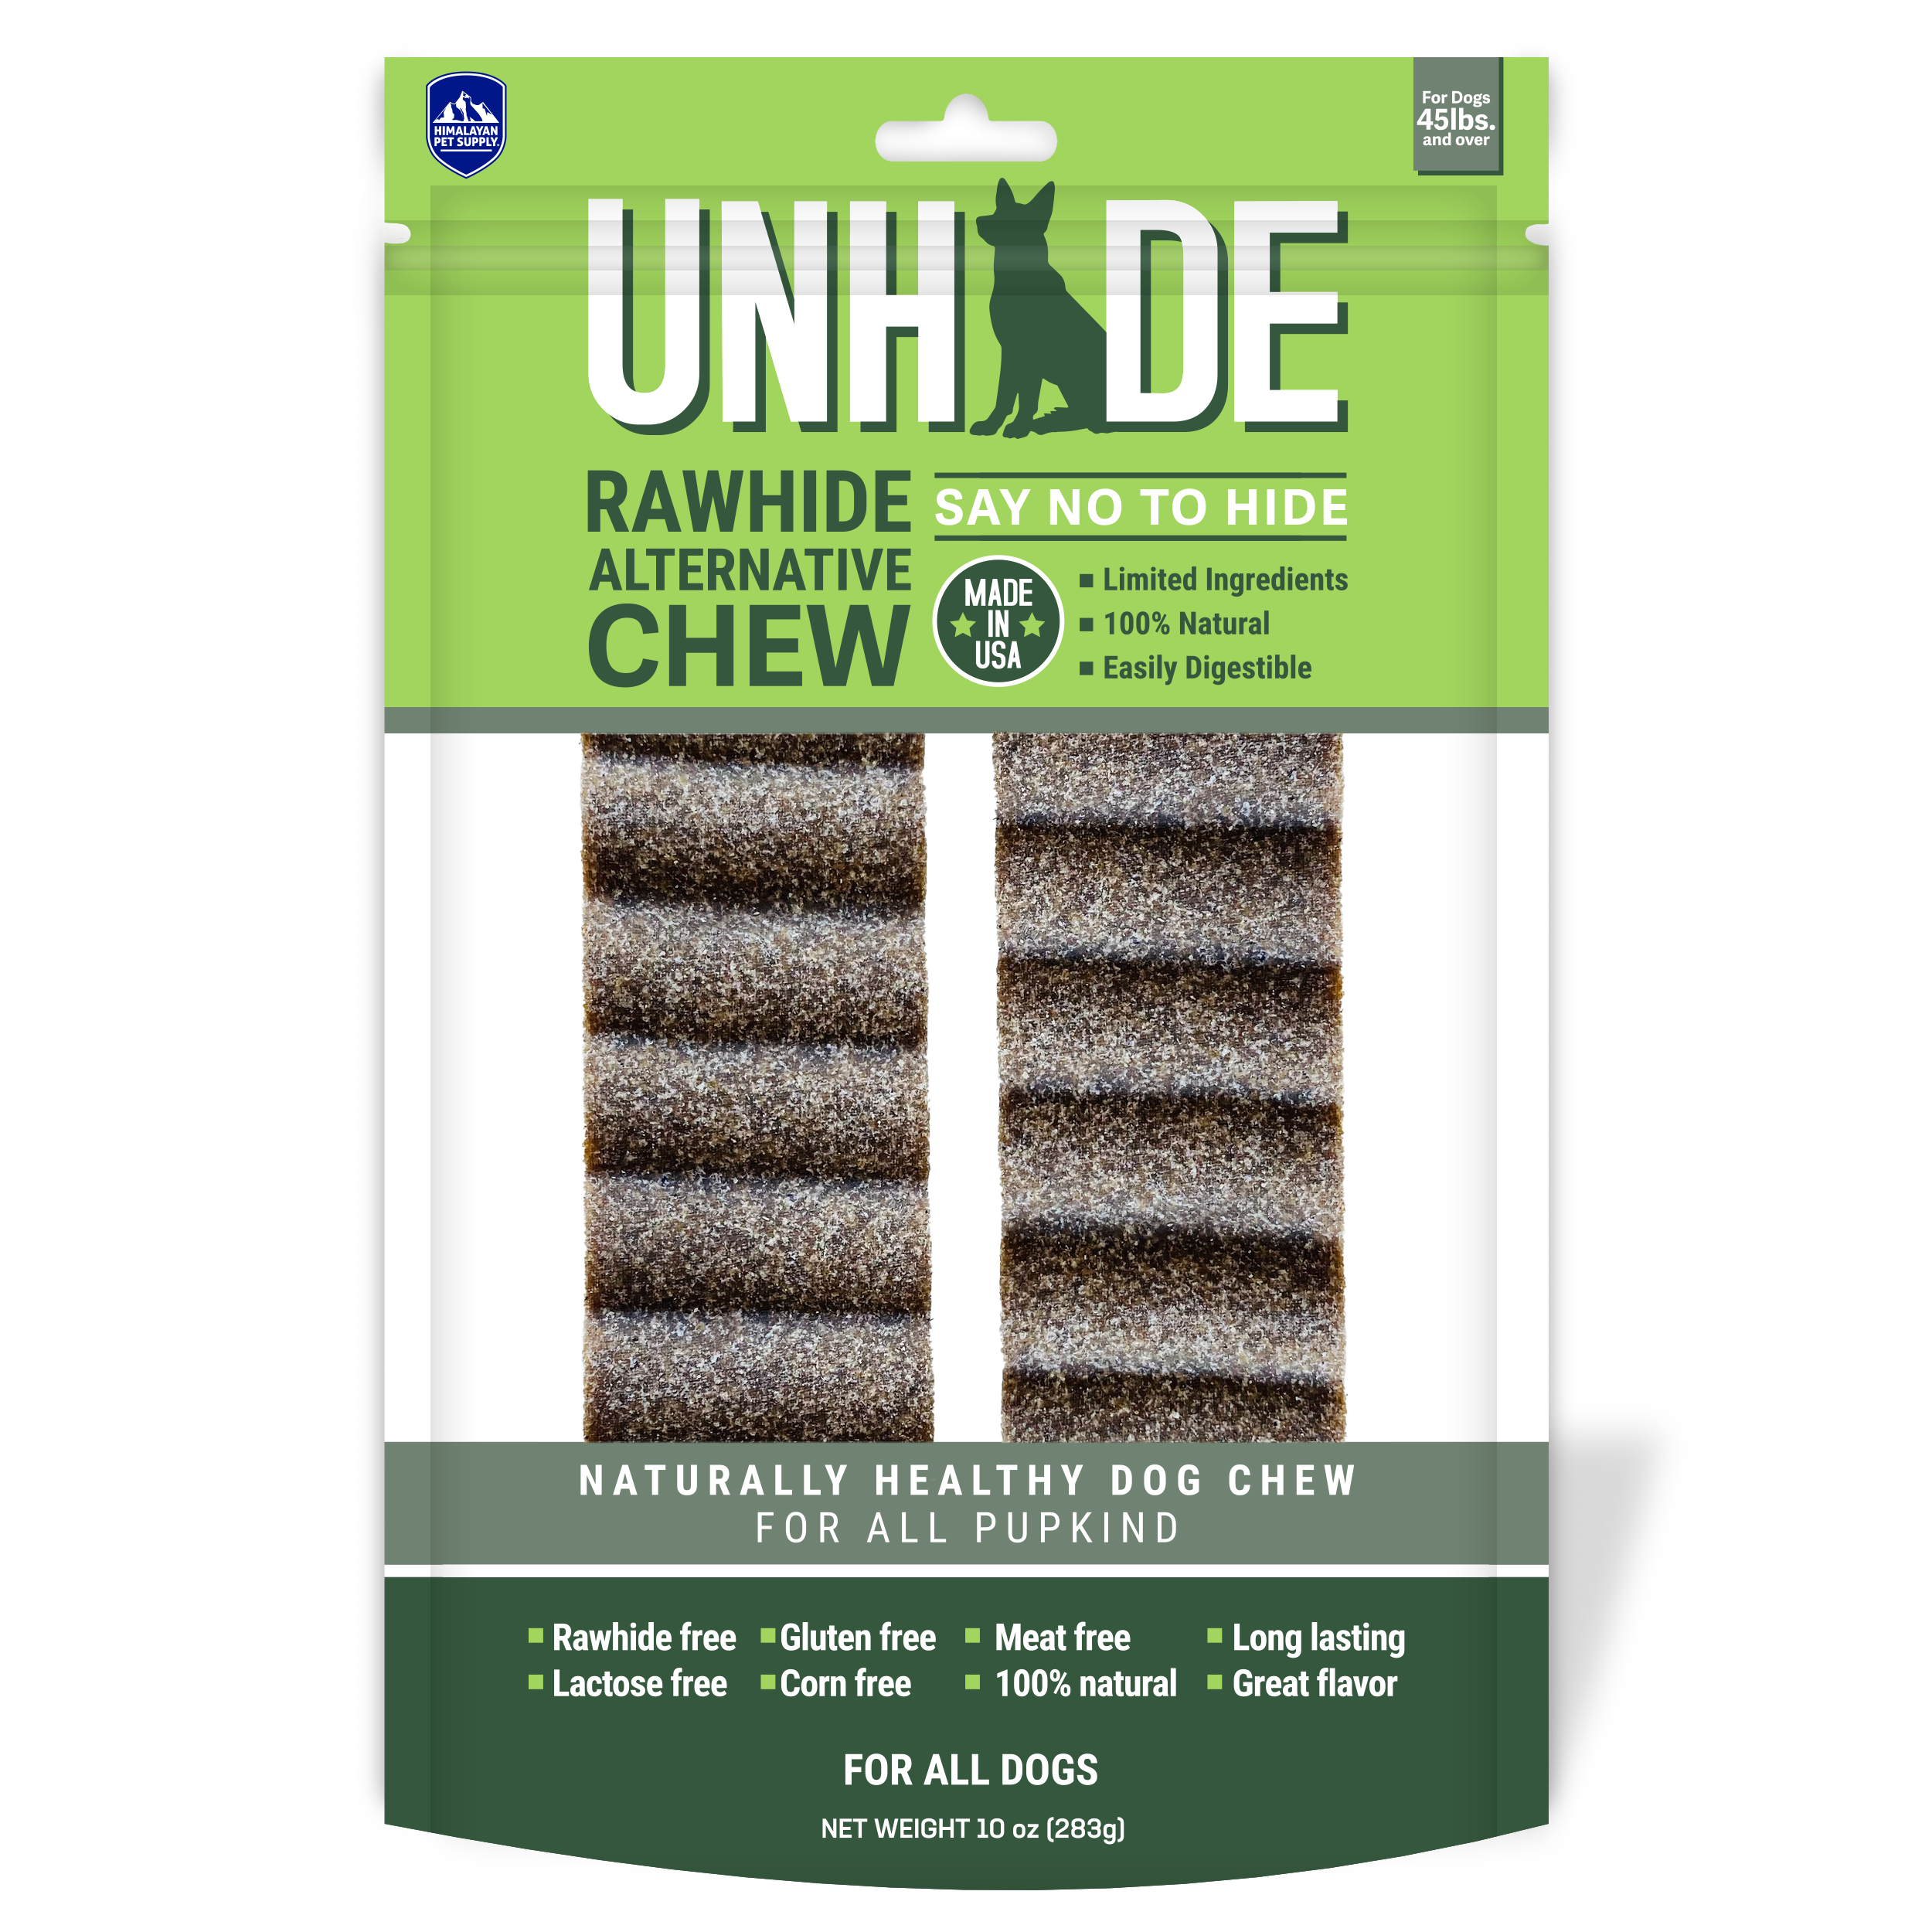 Unhide Chew